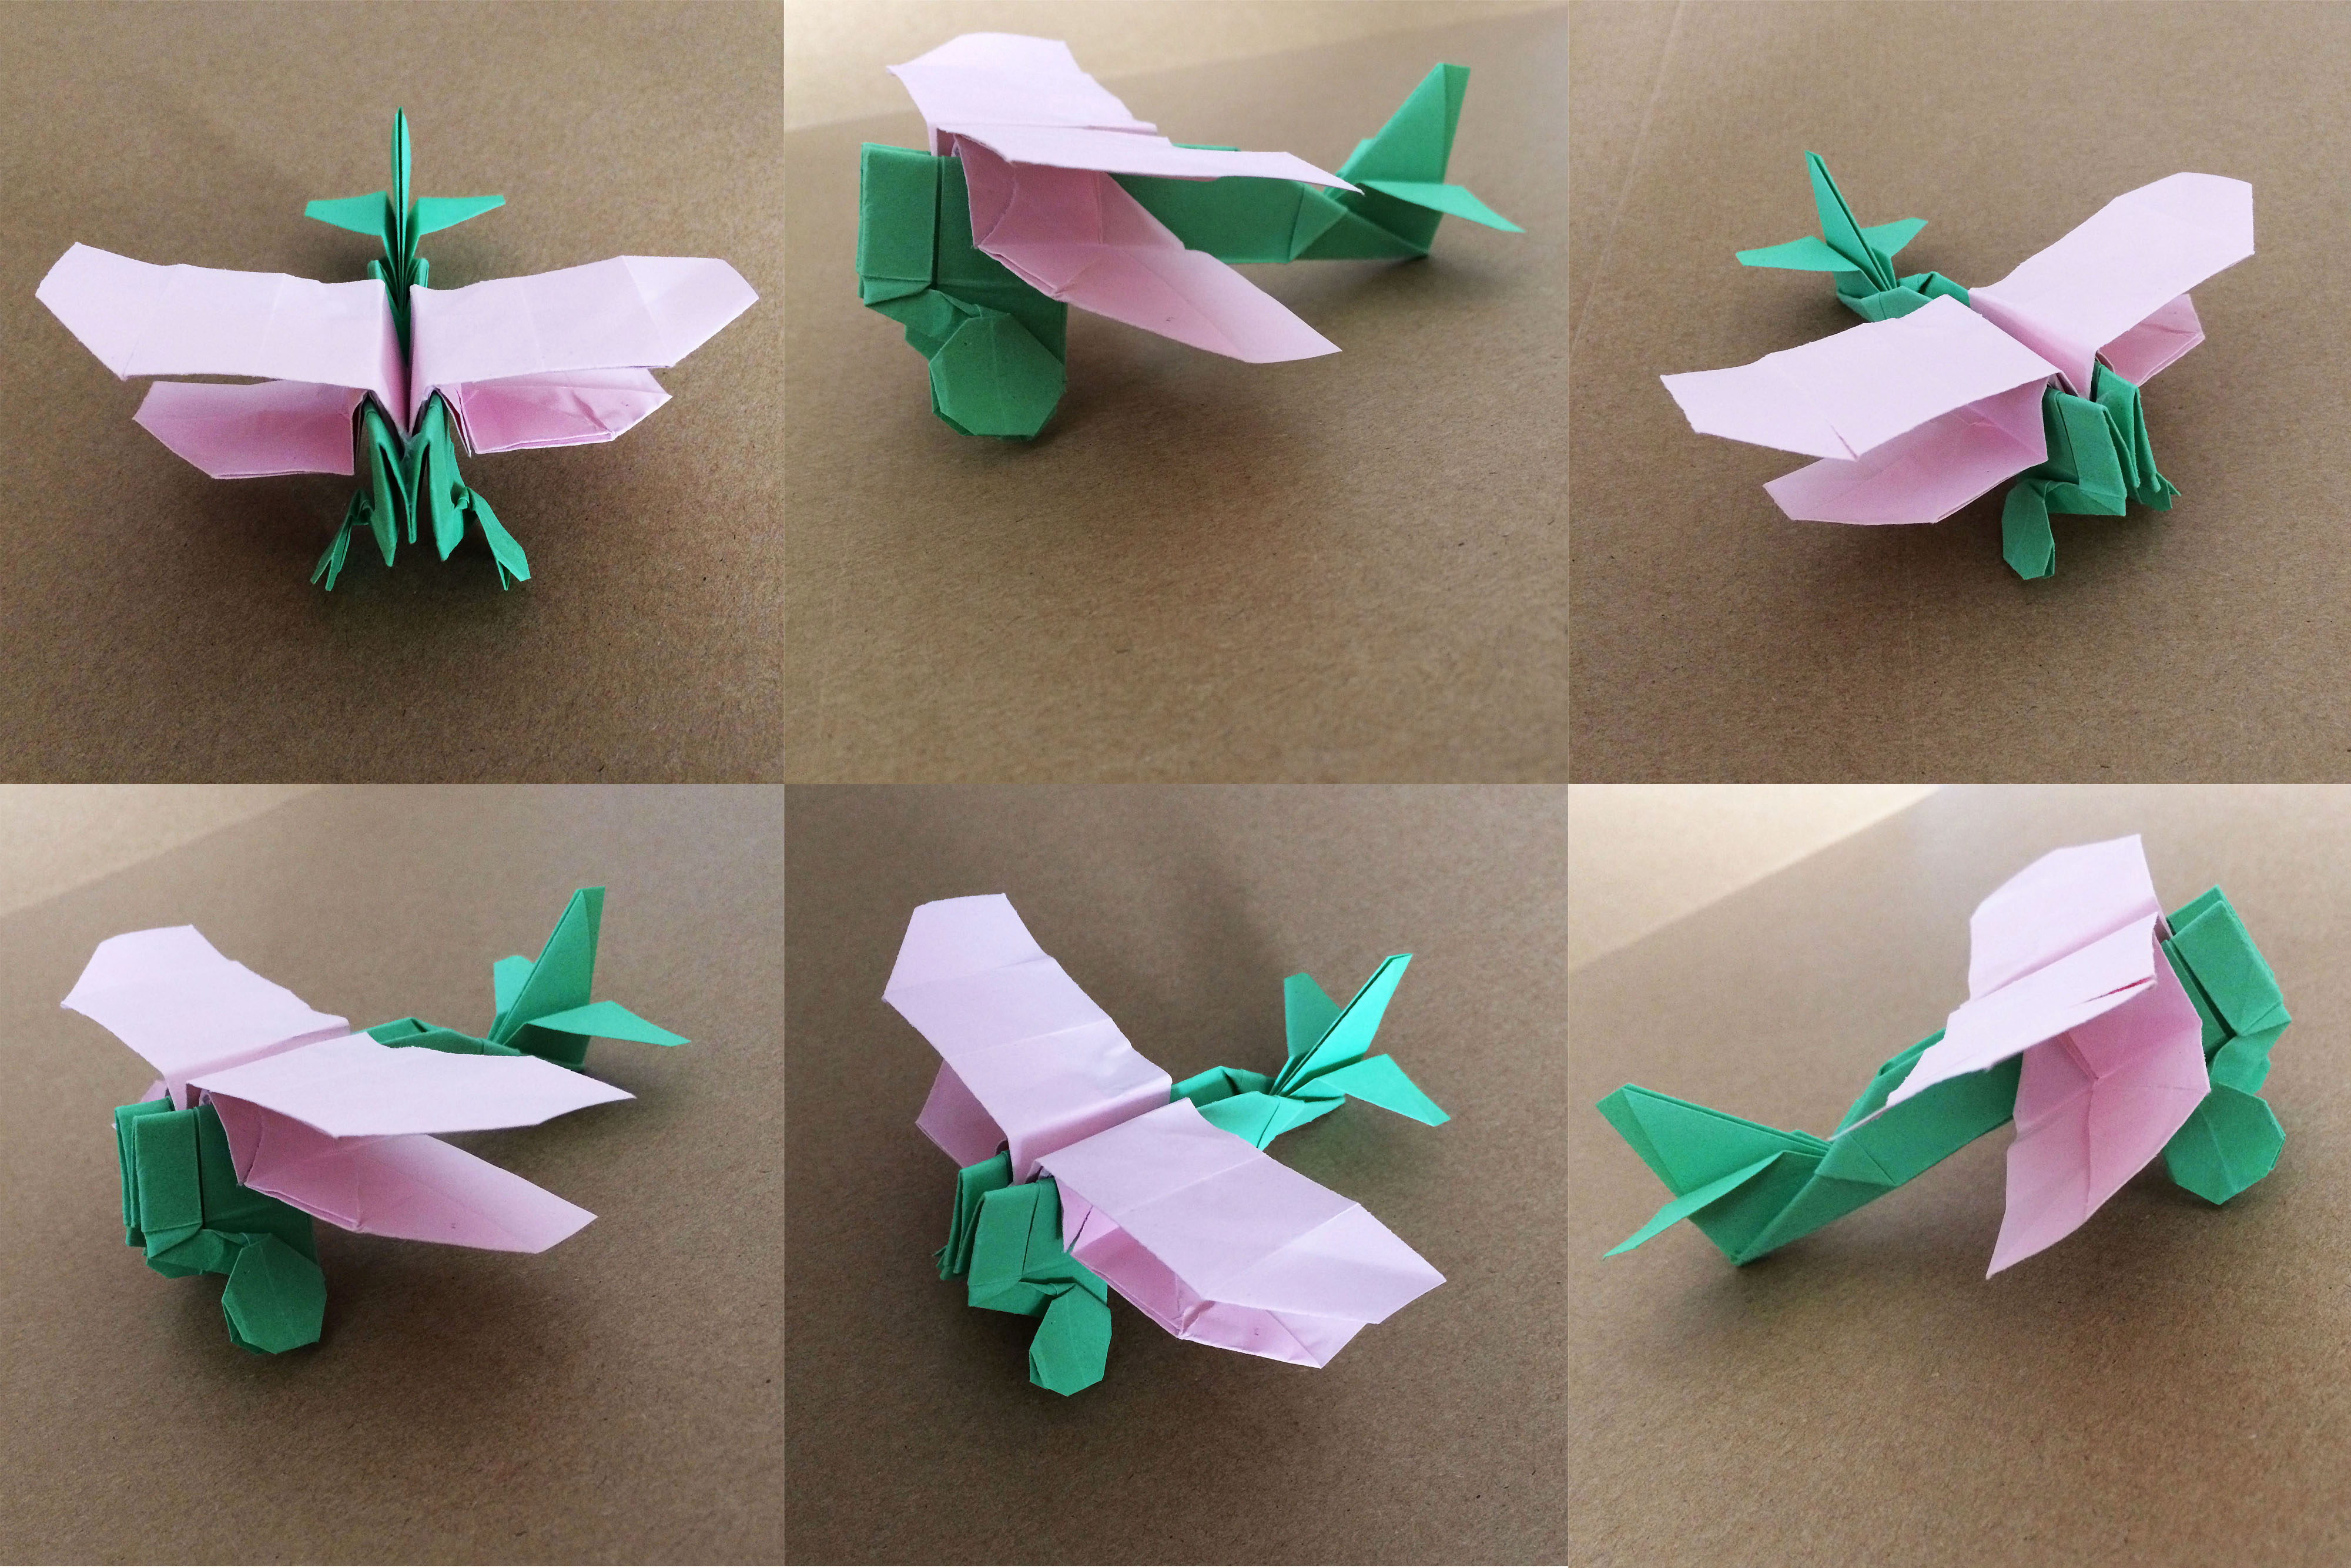 一起动手吧手工制作组装一款炫酷双翼纸飞机